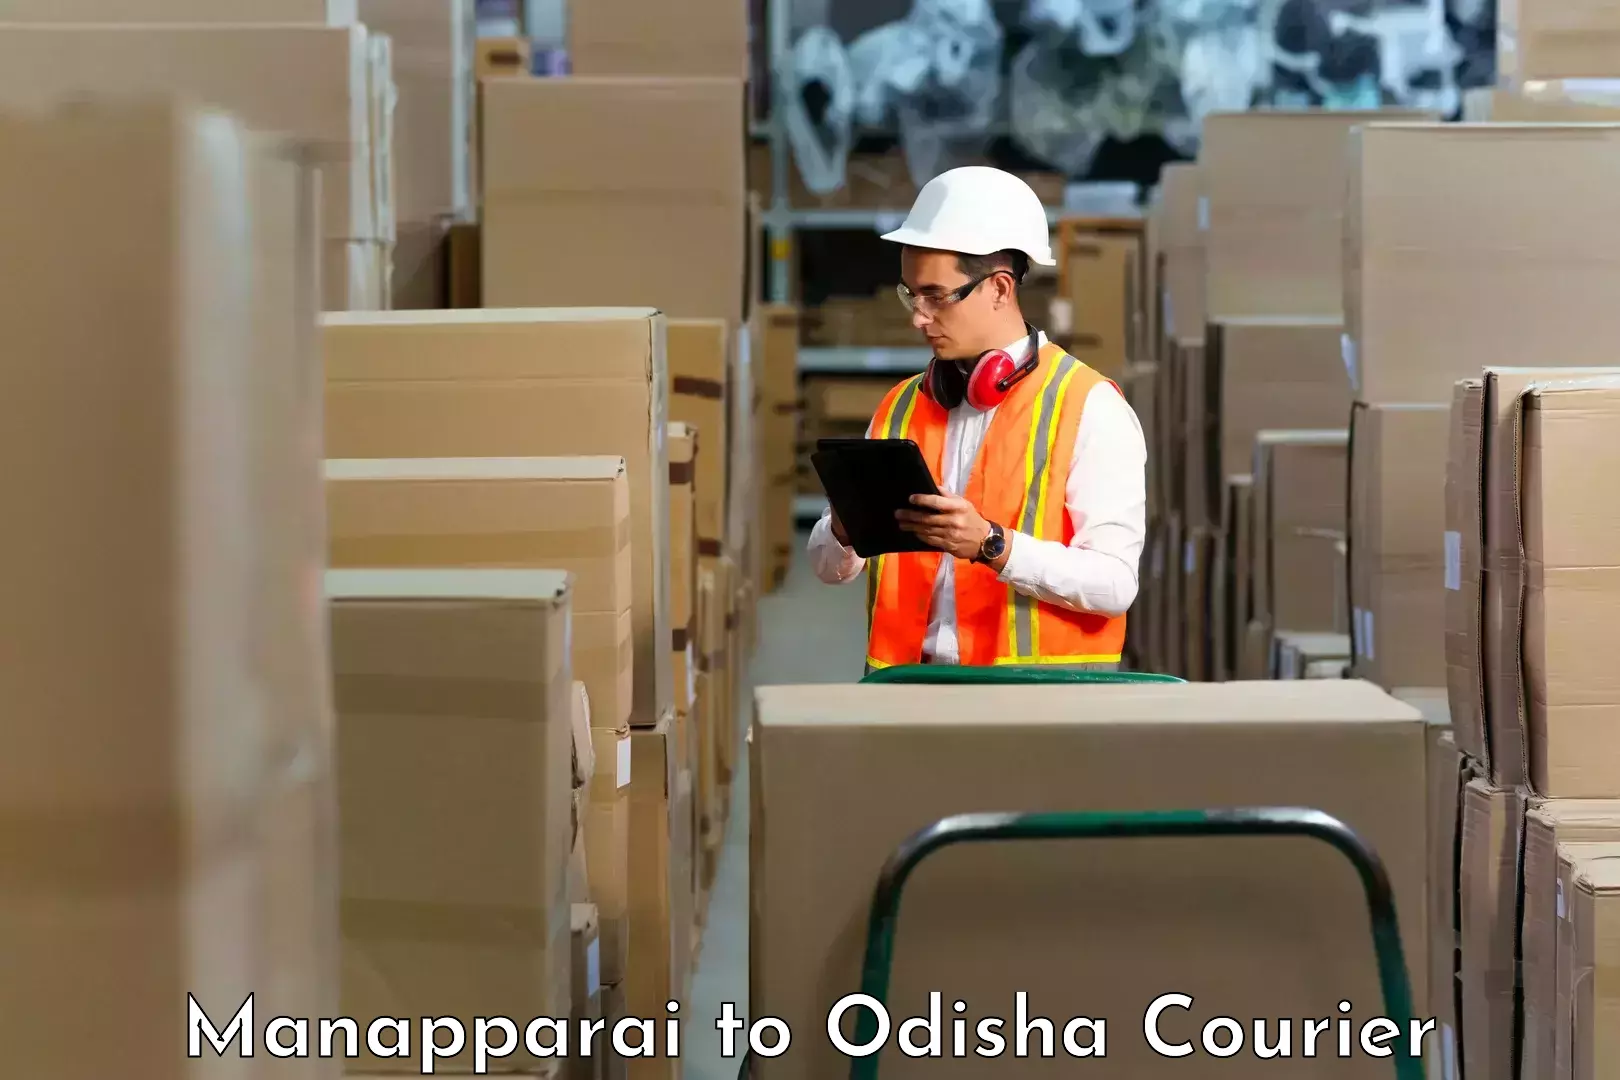 Modern courier technology Manapparai to Saintala